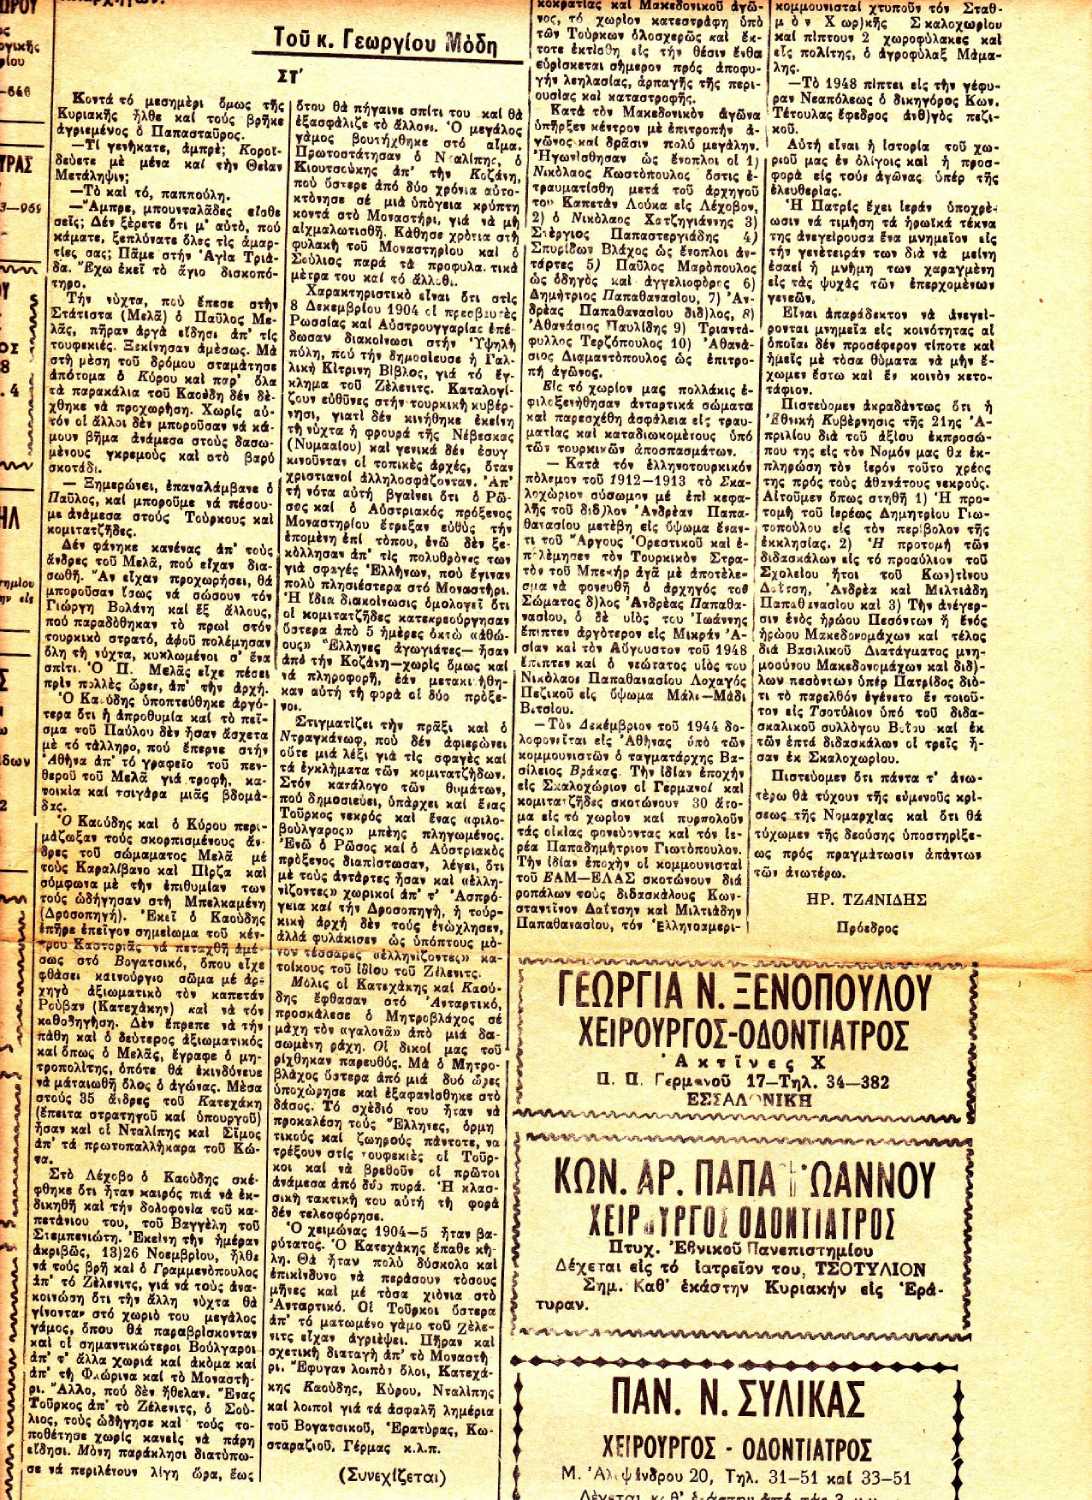 Εφημερίδα Δυτική Μακεδονία (11)